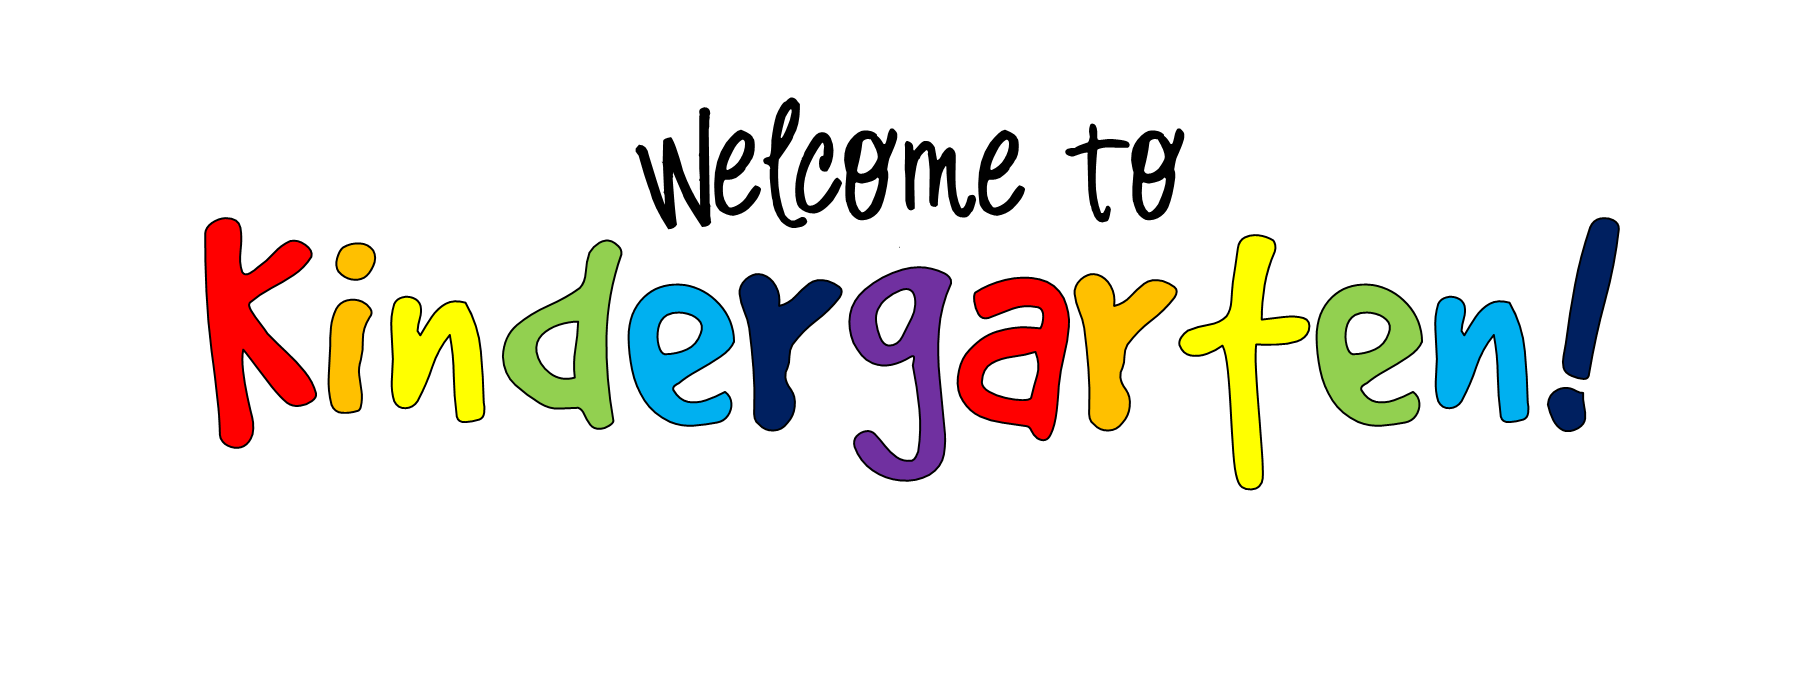 Kindergarten Clip Art   Clipart Best